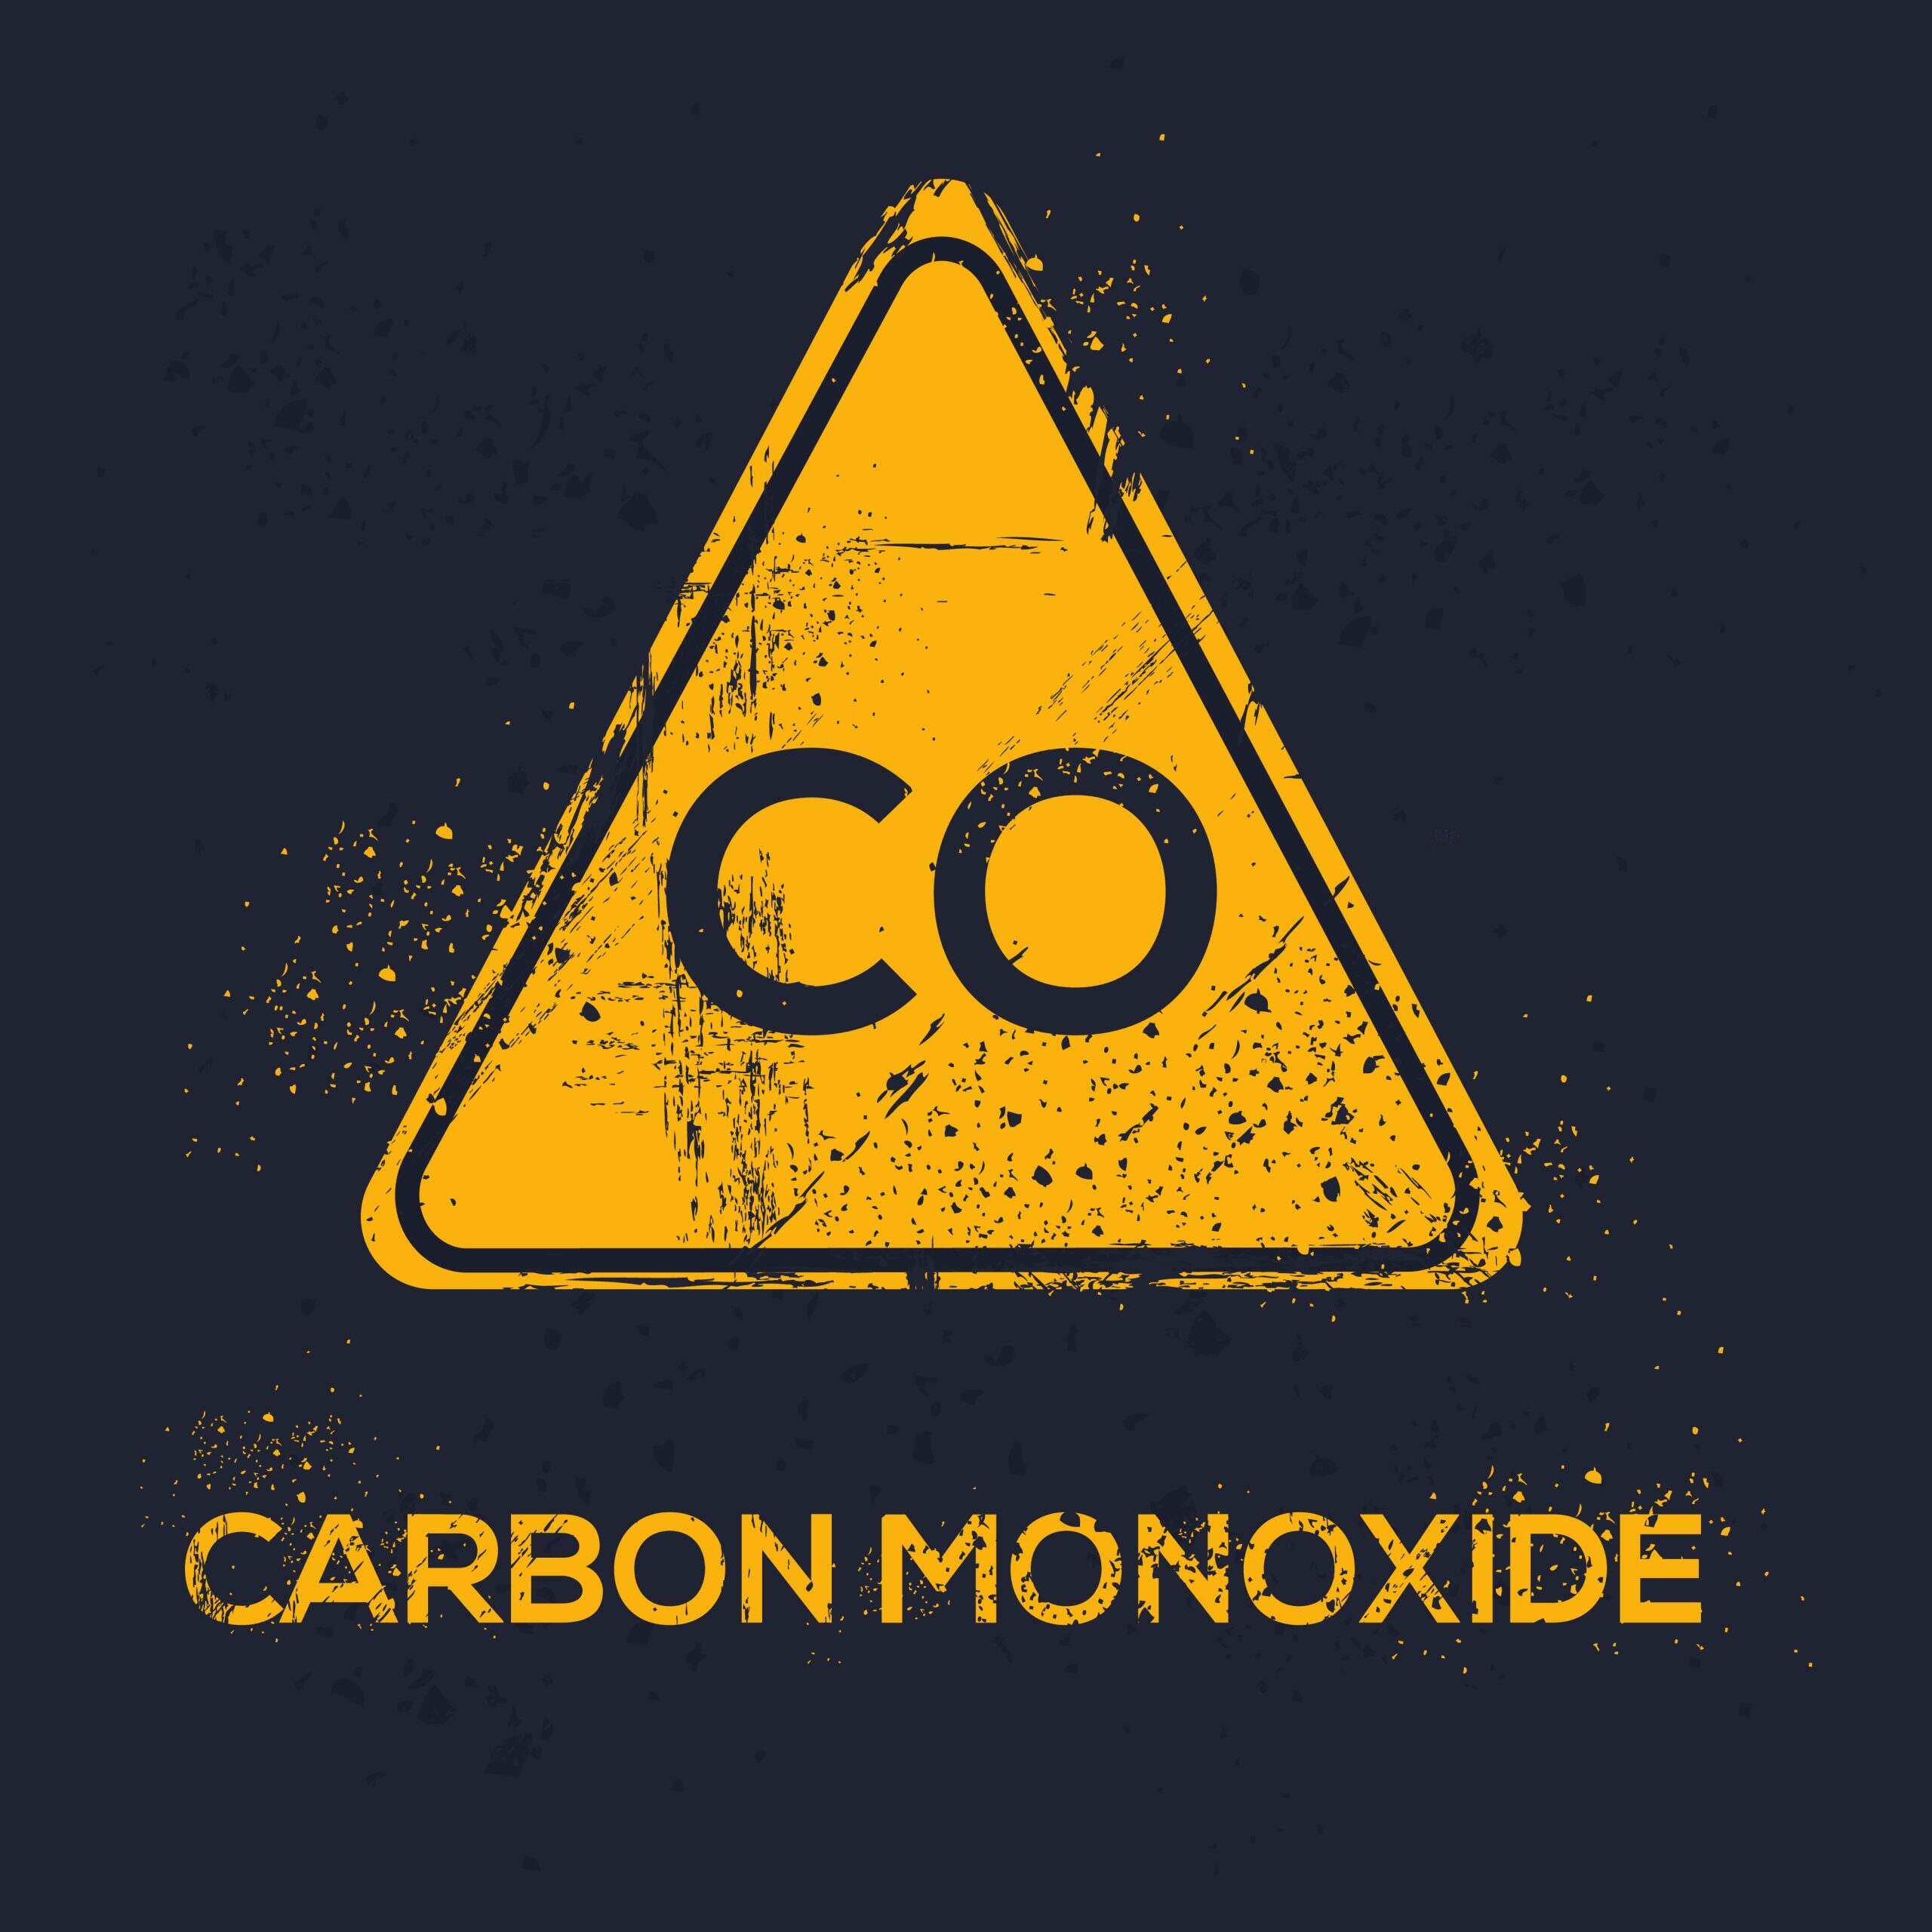 18 Interesting Facts About Carbon Monoxide - Facts.net